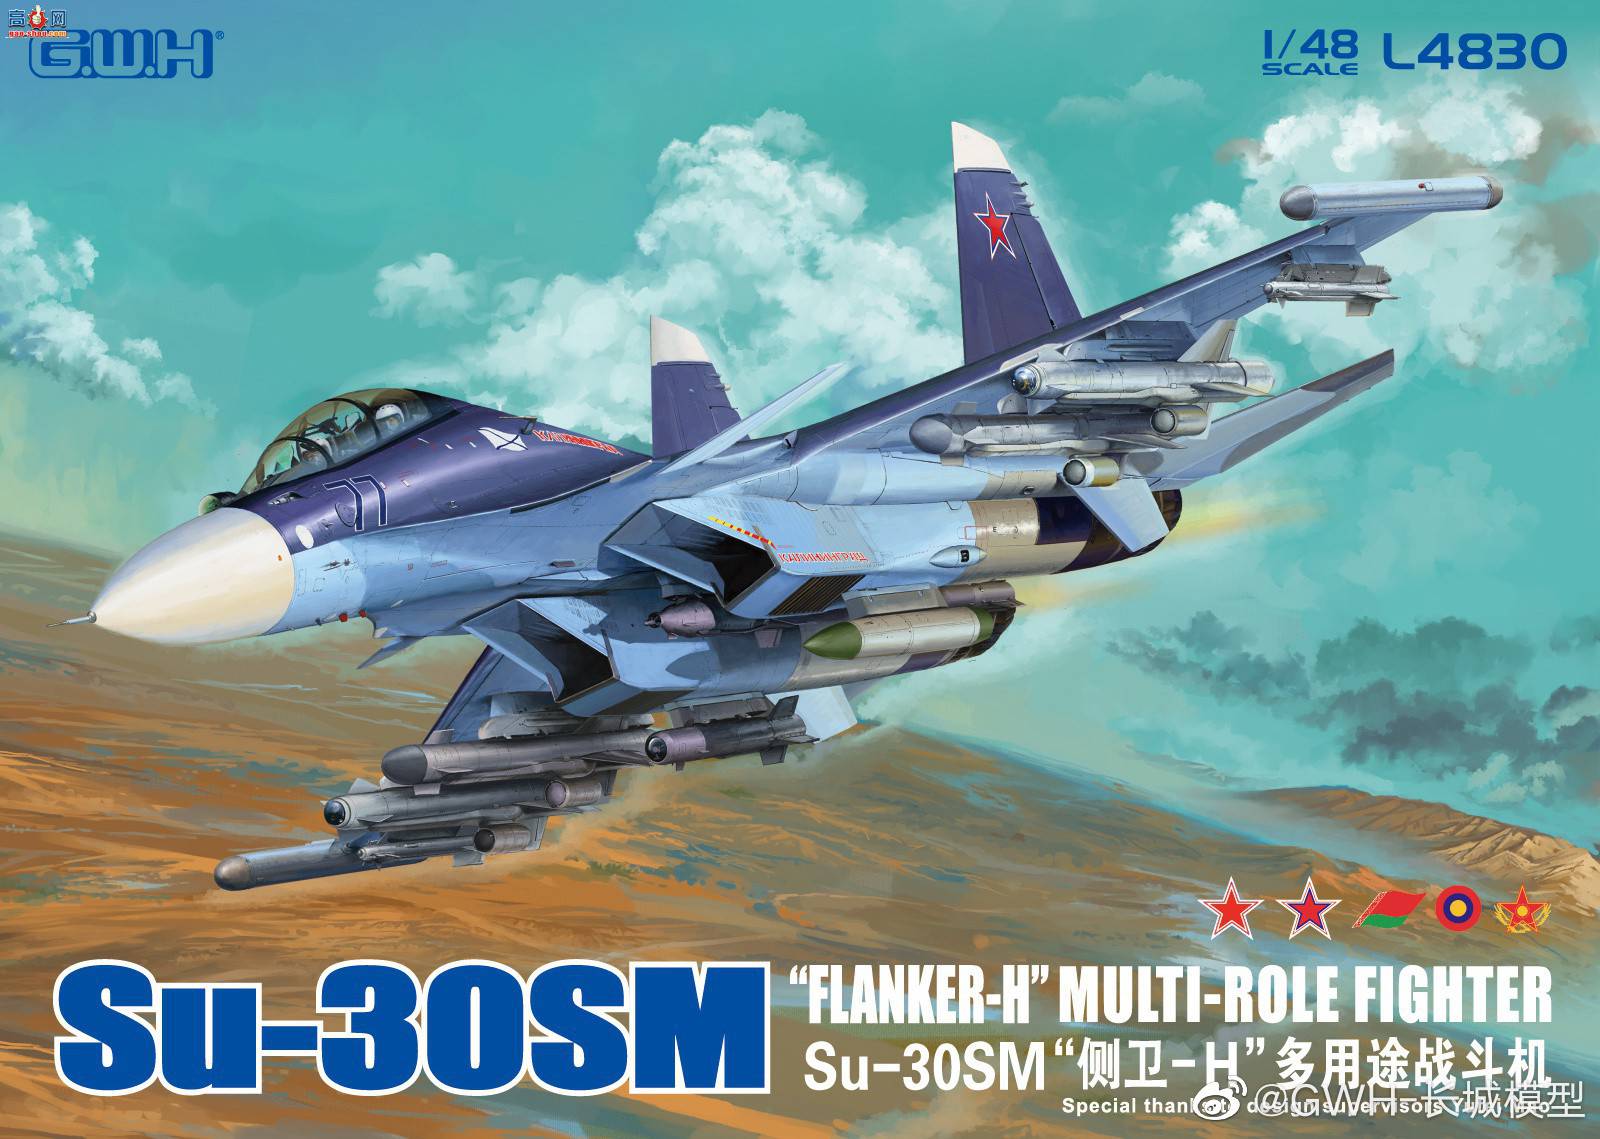 【长城新品】L4830 Su-30SM “侧卫-H” 多用途战斗机